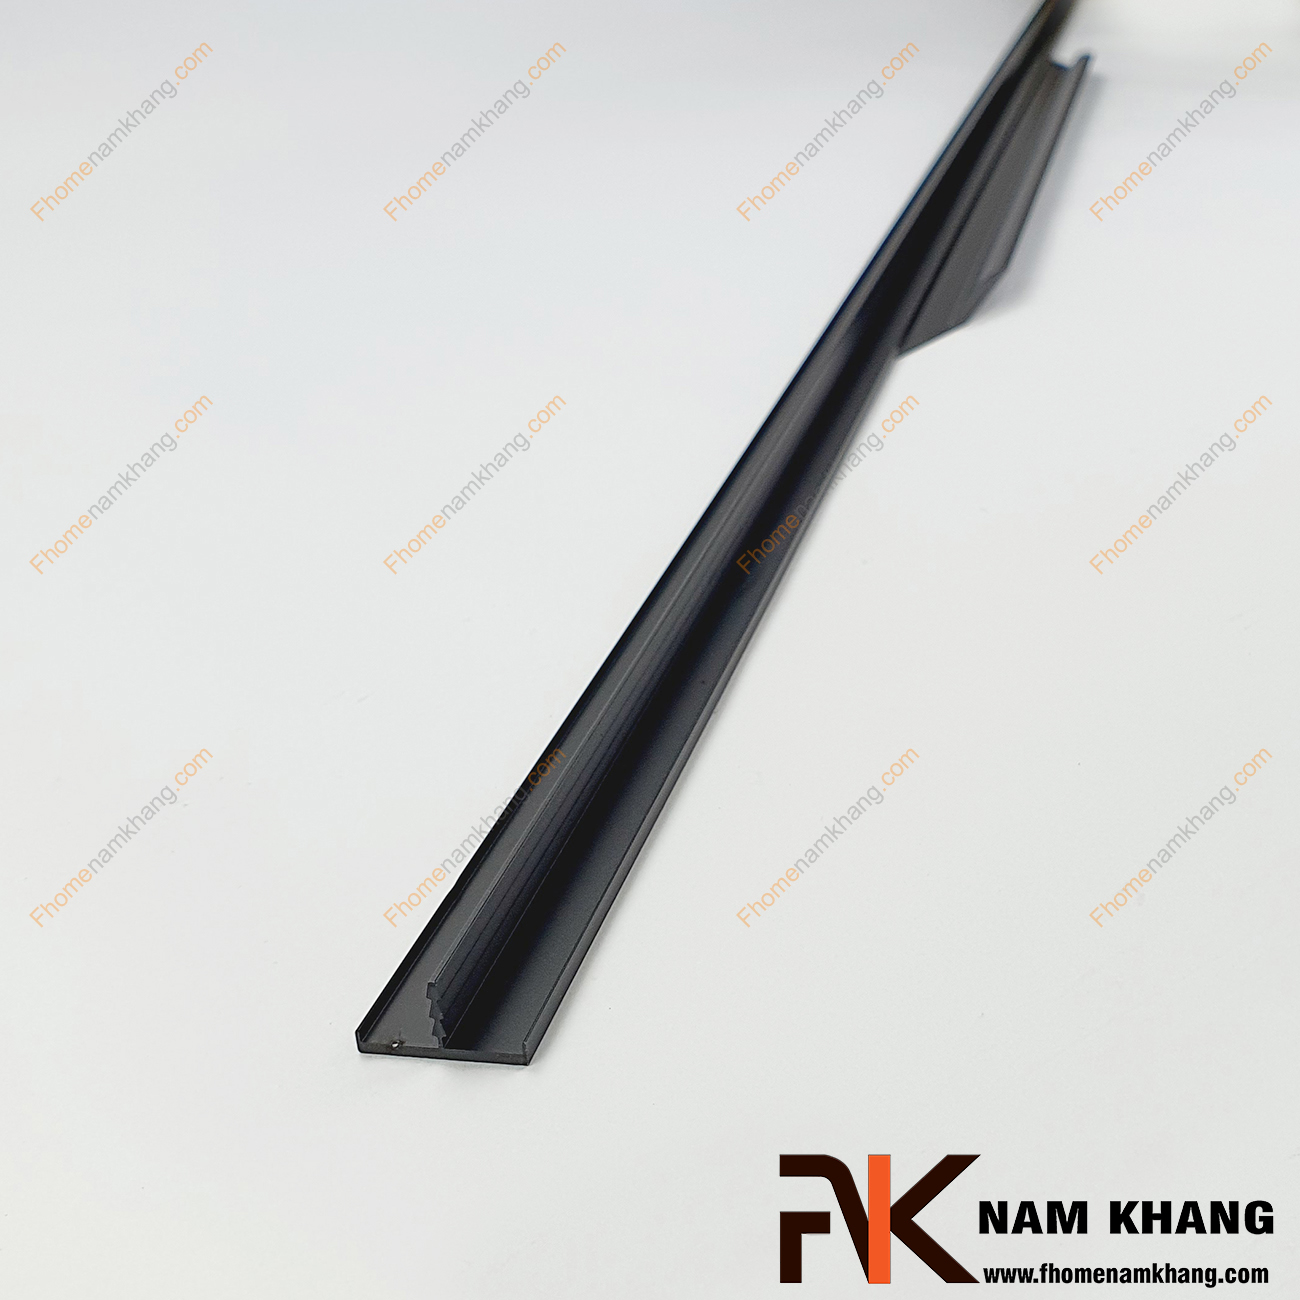 Tay nắm tủ xẻ rãnh dạng thanh dài màu đen NK369L-D là dạng tay nắm tủ xẻ rãnh và bắt vào cạnh của cánh cử